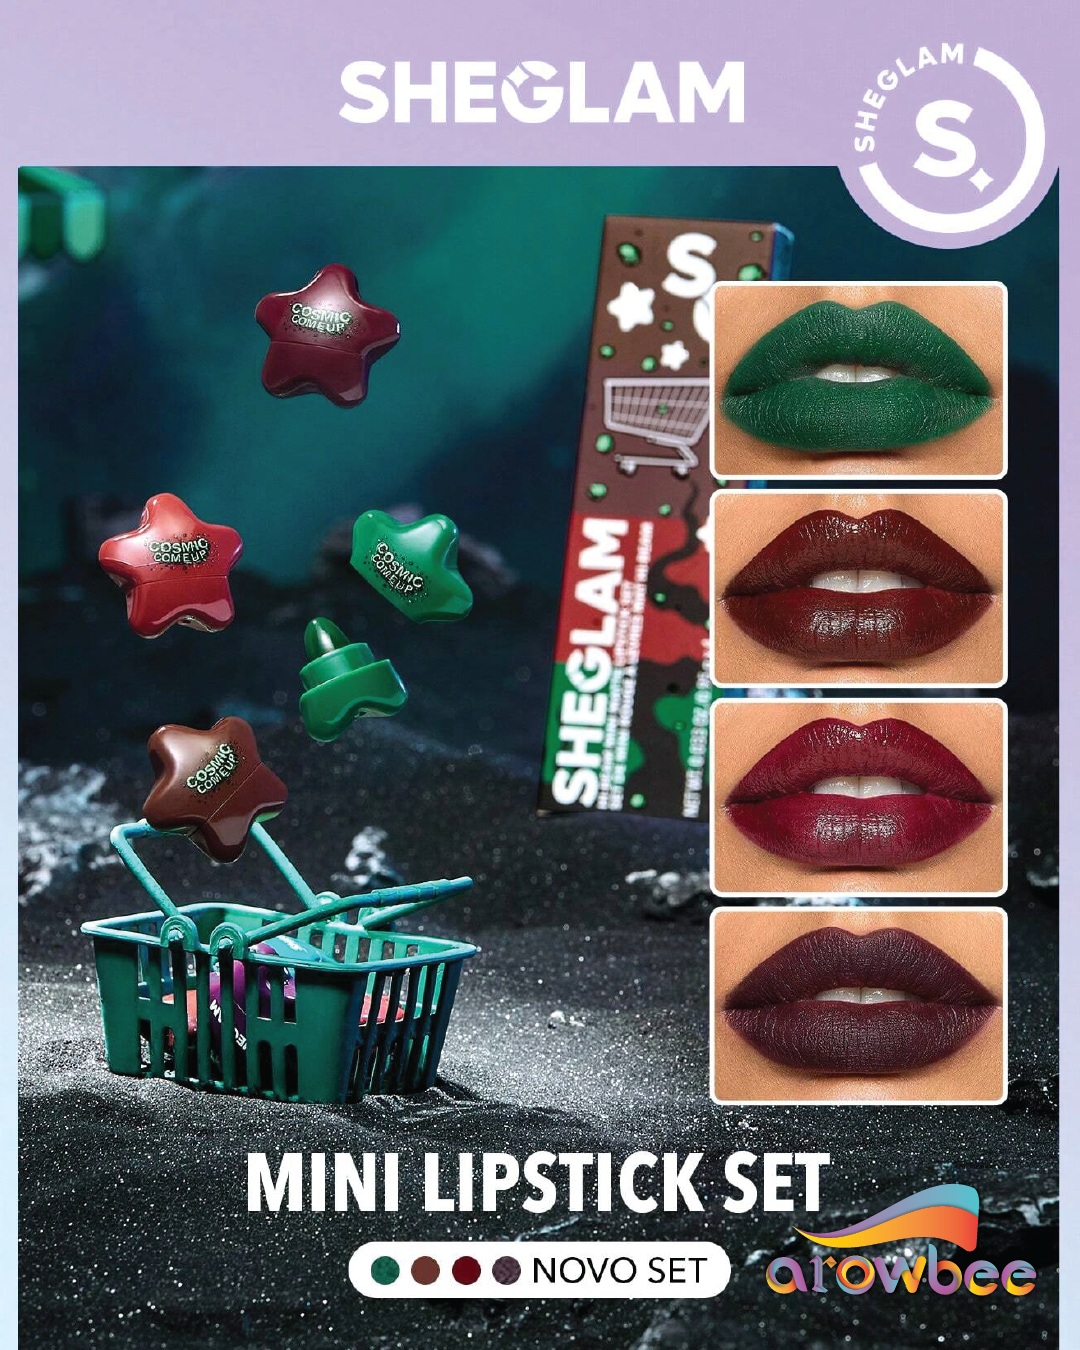 SHEGLAM Hi-Beam Mini Lipstick Set